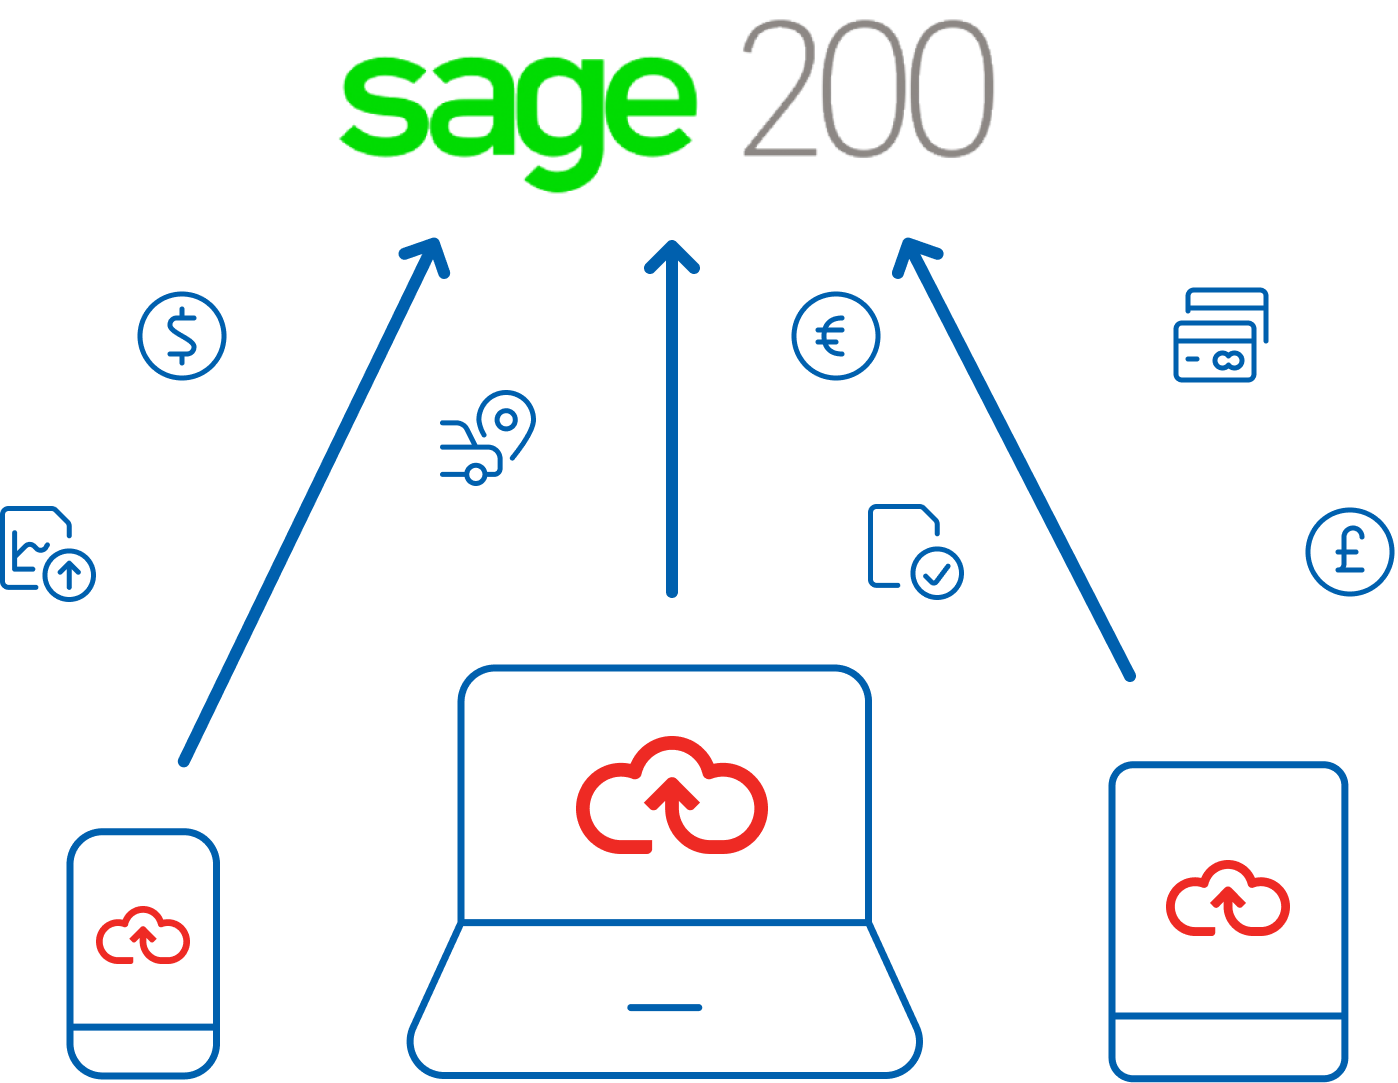 Sage 200 Integration